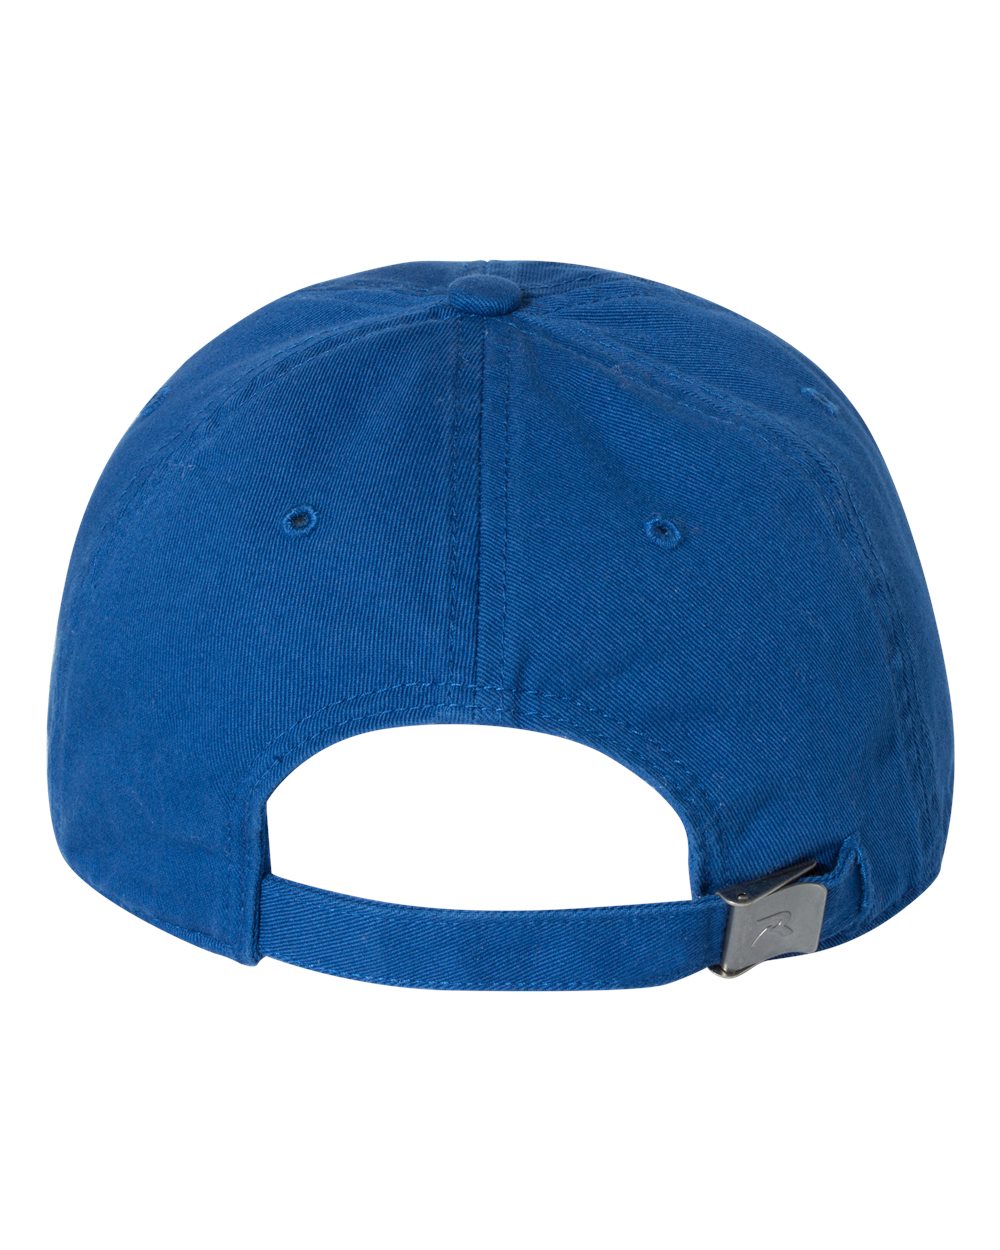 Richardson-Washed Customized Chino Caps, Royal